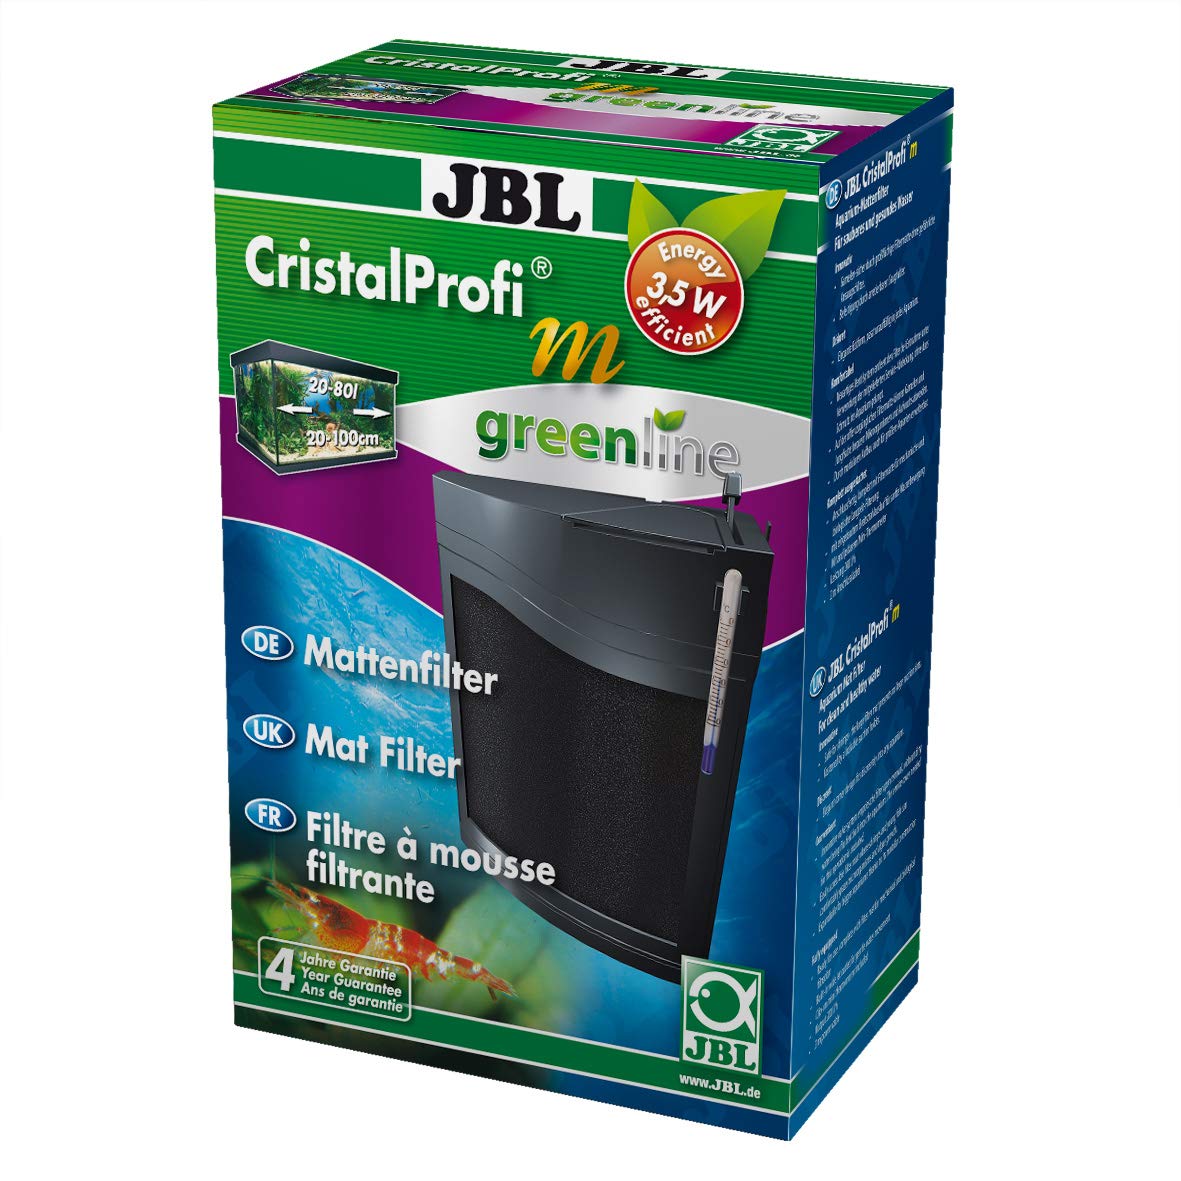 JBL CristalProfi m greenline 6096000, Mattenfilter inkl. Pumpe, Für Aquarien von 20-80 l, 1 Stück (1er Pack)